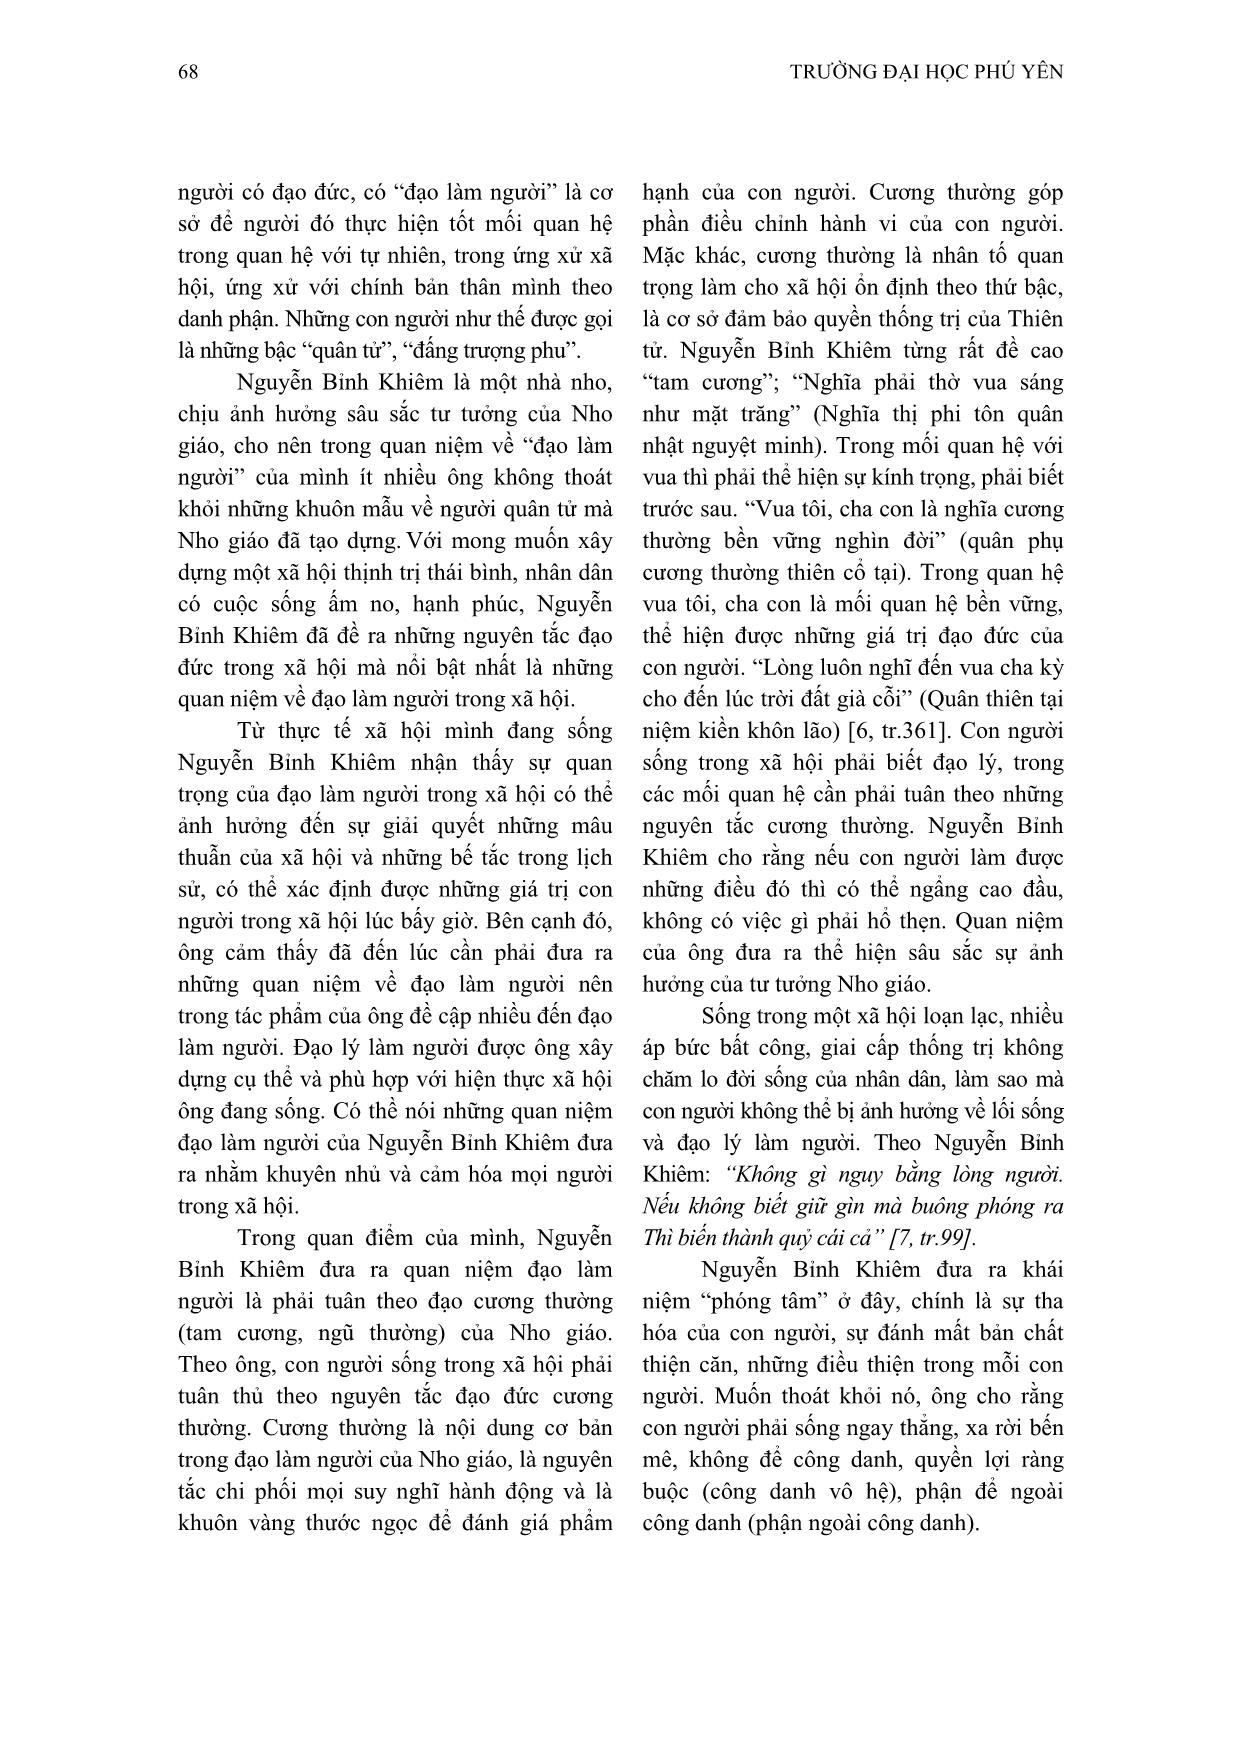 Nội dung và ý nghĩa quan điểm về đạo làm người của Nguyễn Bỉnh Khiêm trang 3